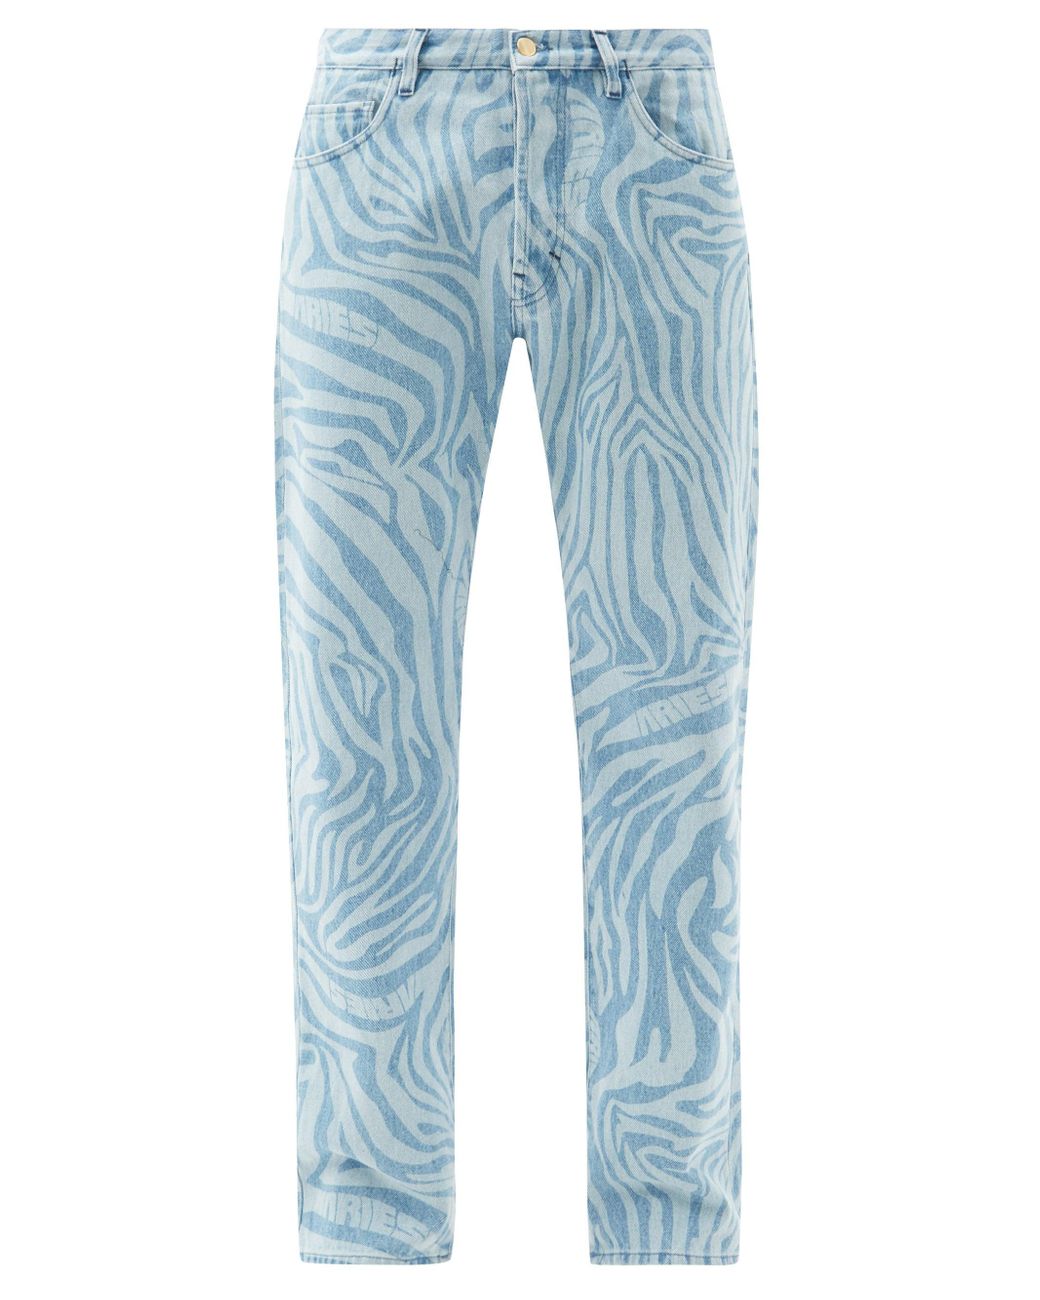 Aries Denim Lilly Zebra-print Straight-leg Jeans in Blue for Men - Lyst